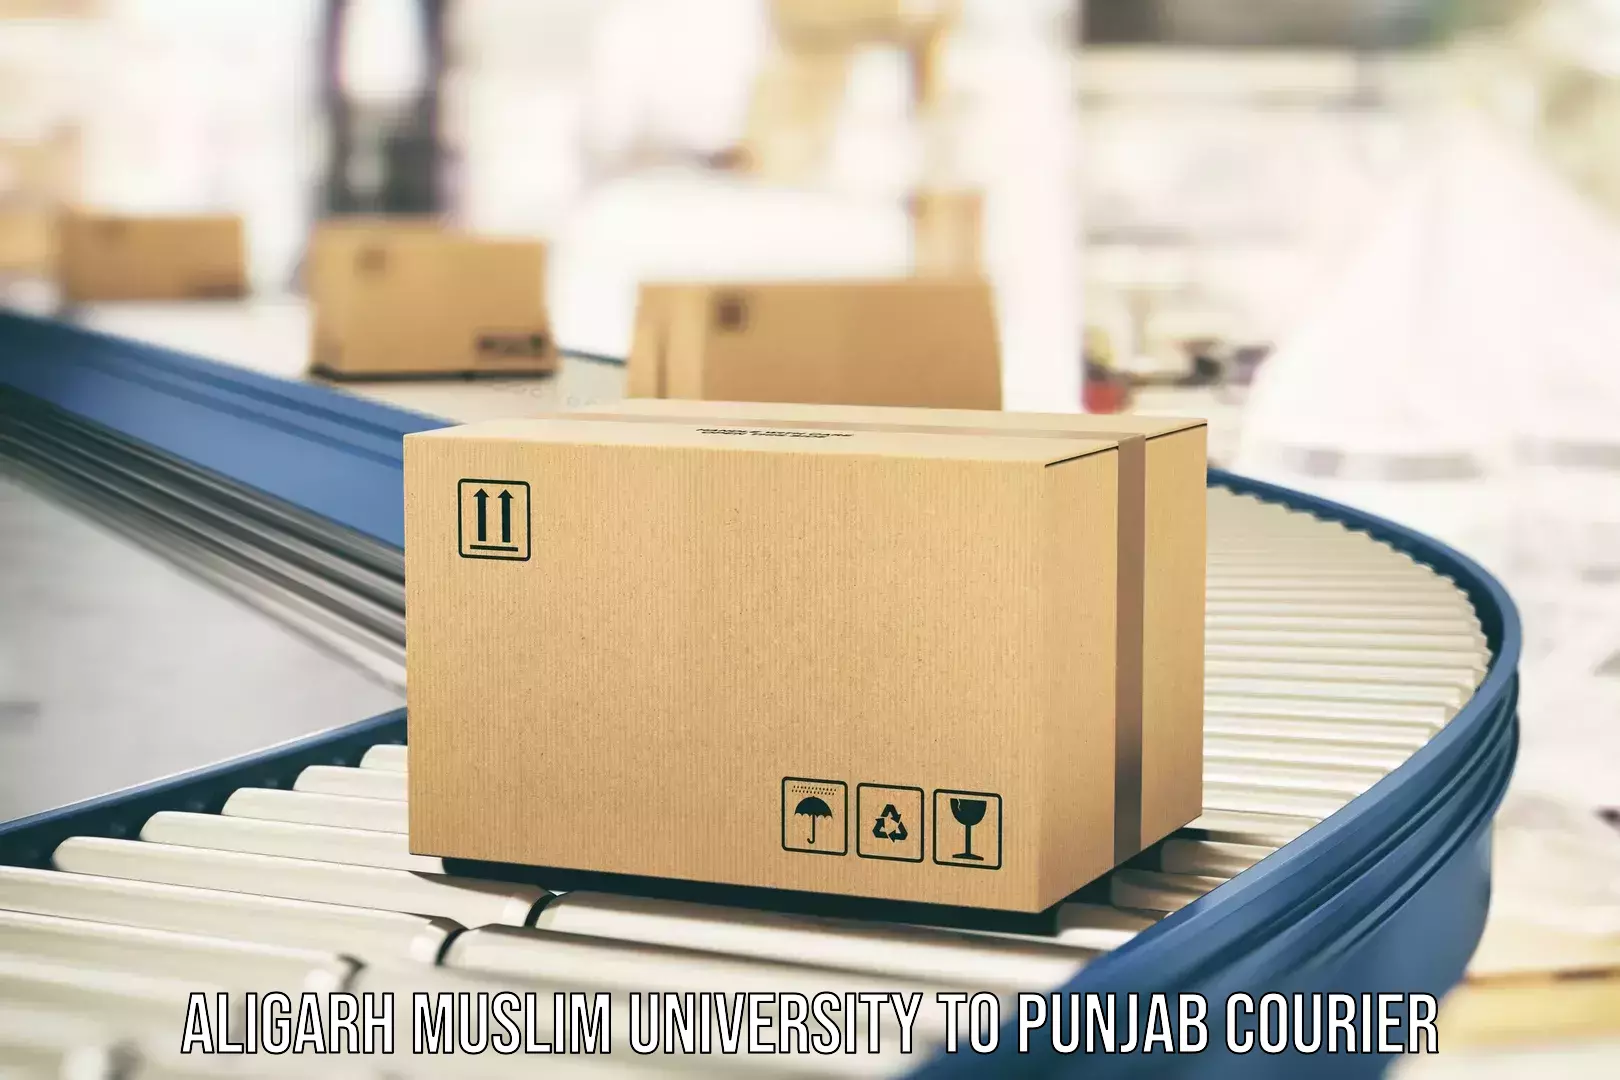 Customized moving experience Aligarh Muslim University to Punjab